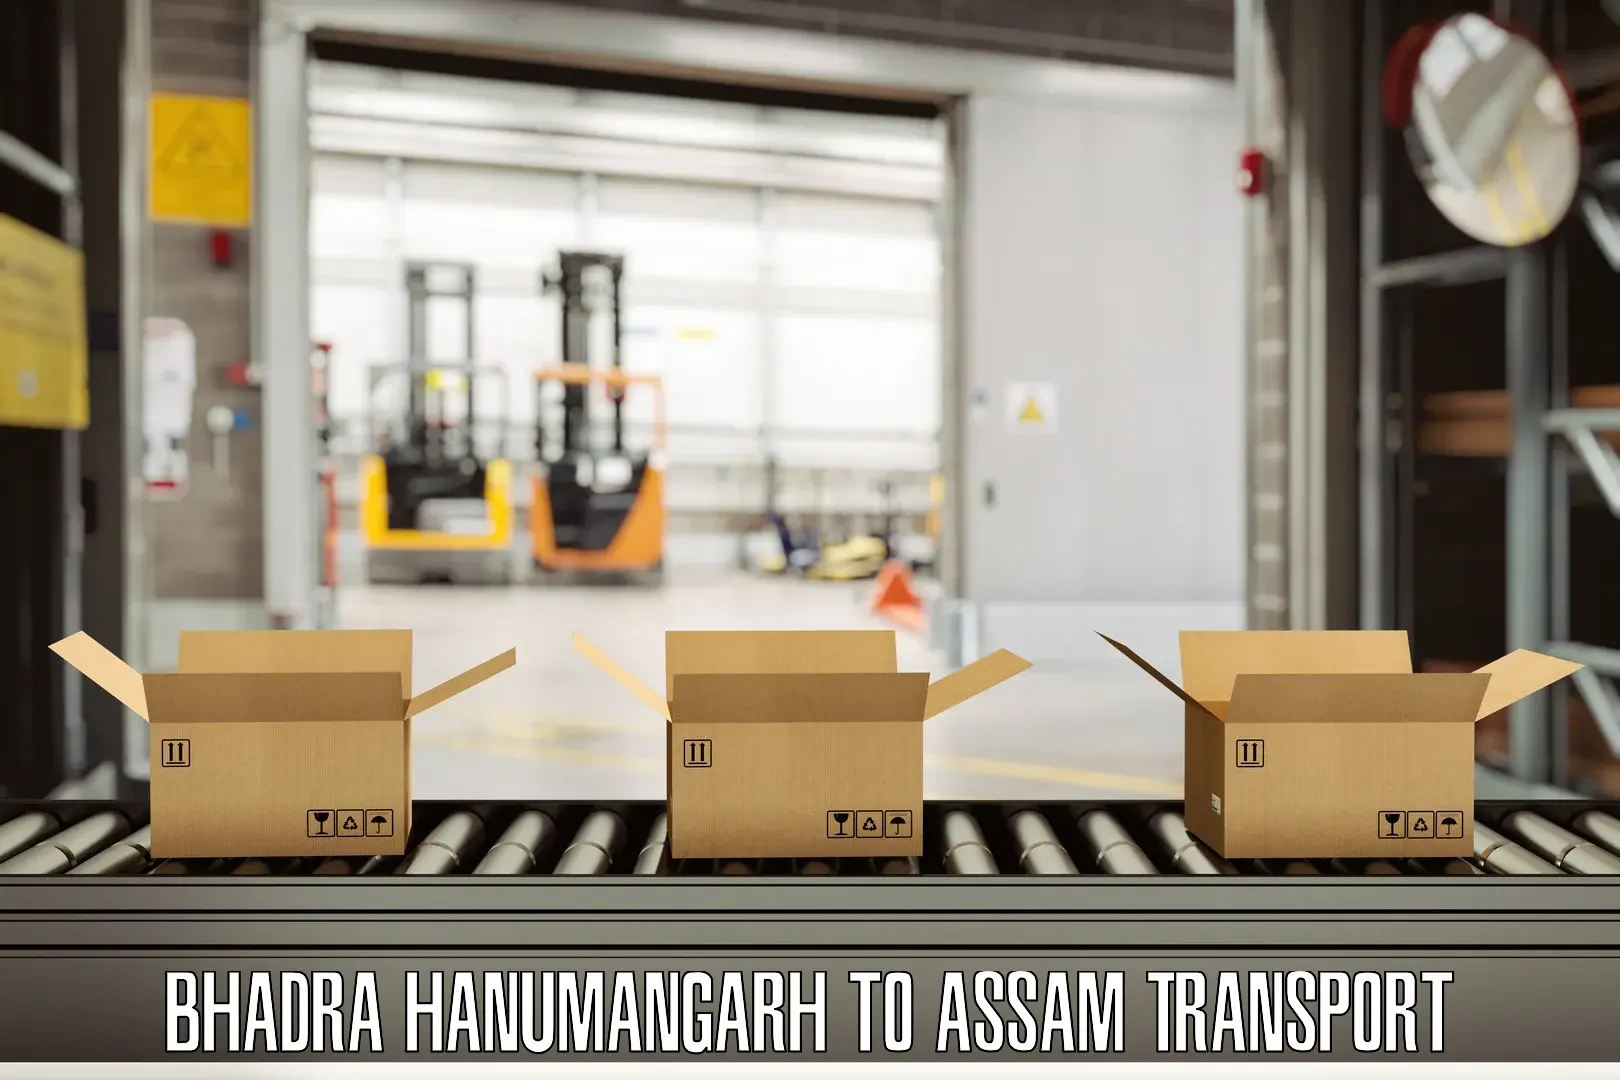 Online transport Bhadra Hanumangarh to Hailakandi